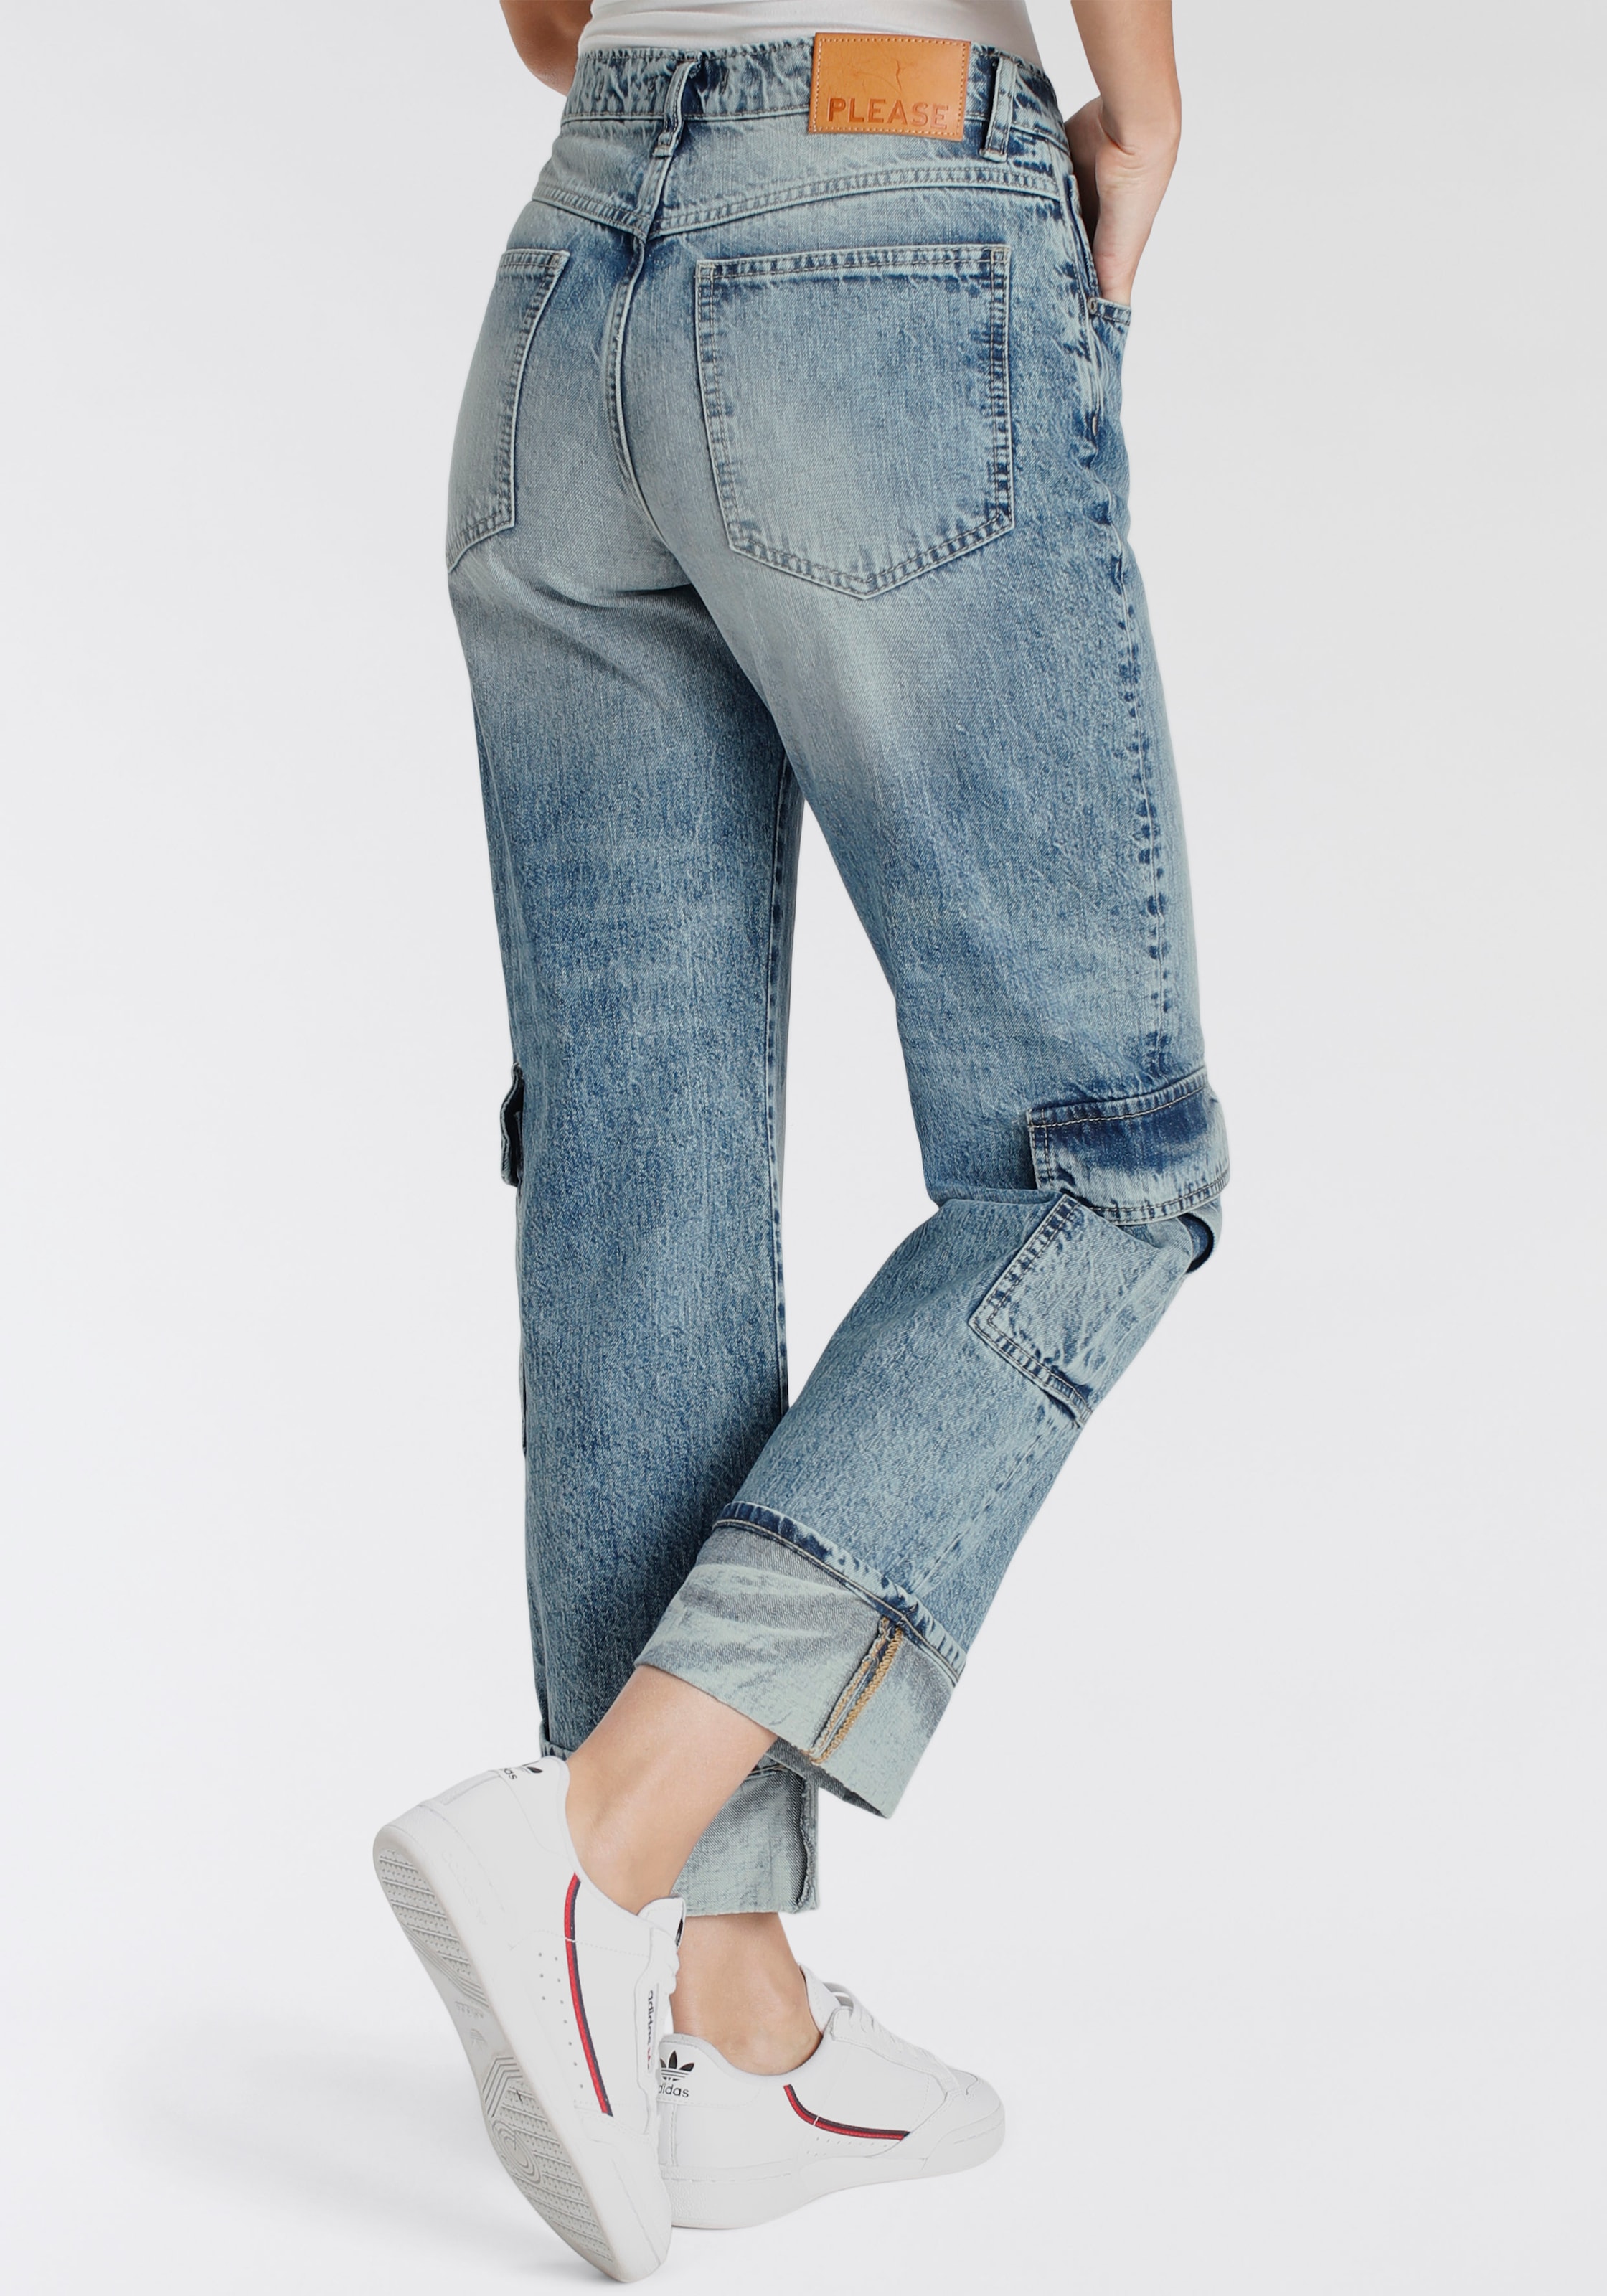 Please kaufen OTTO Boyfriend-Hose bei Jeans